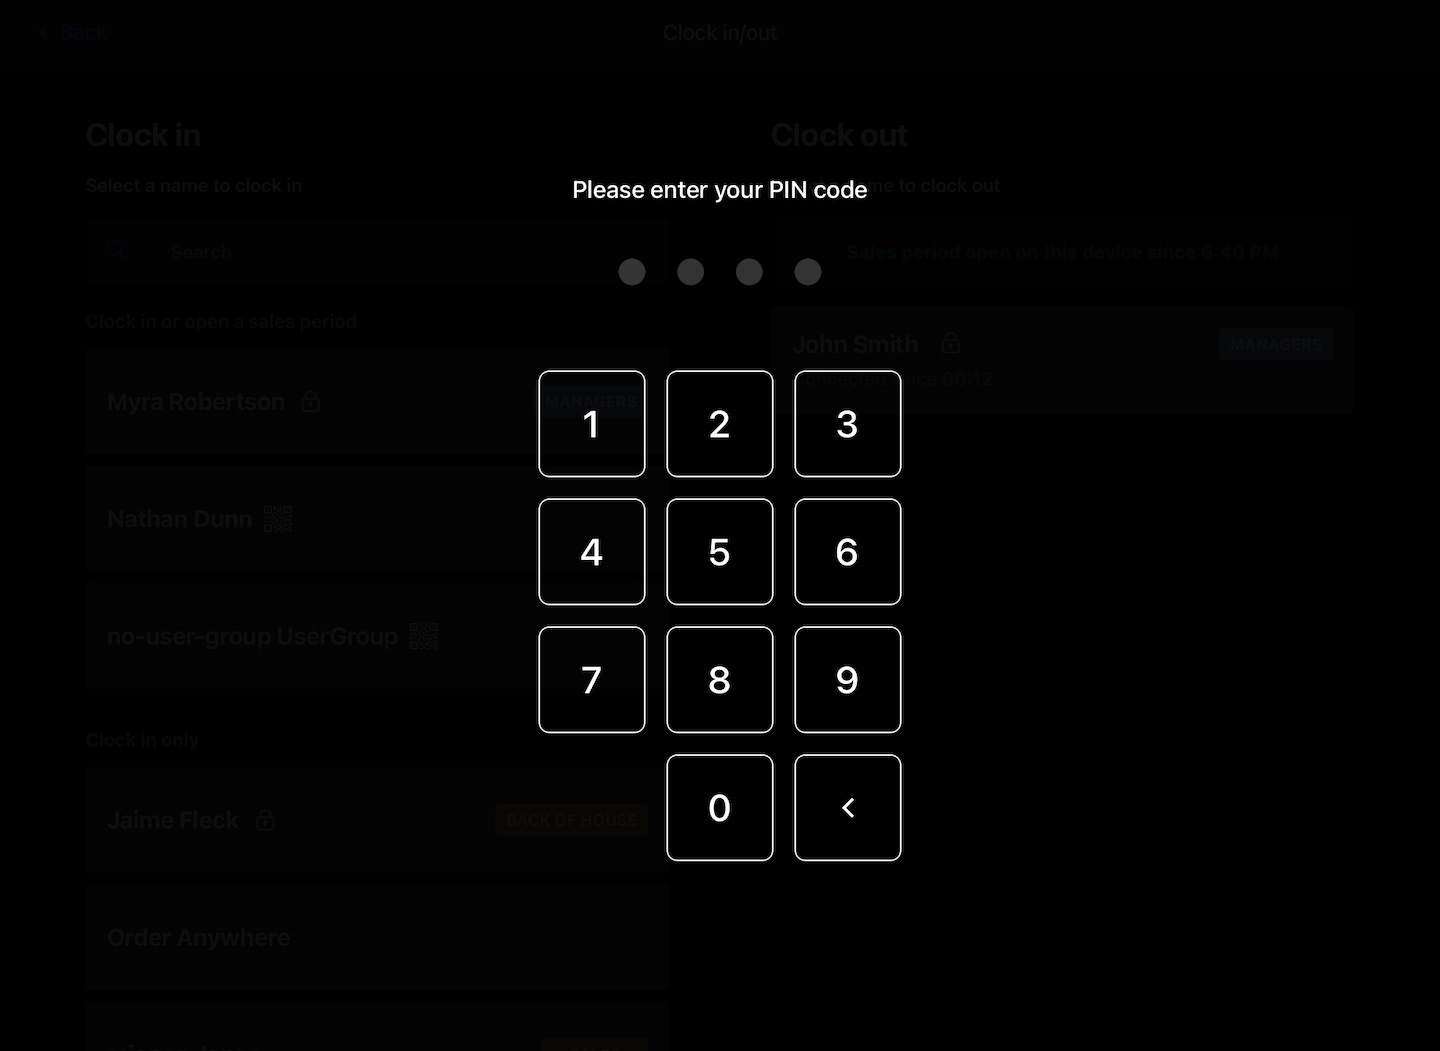 Pincode-Eingabebildschirm mit Tastatur